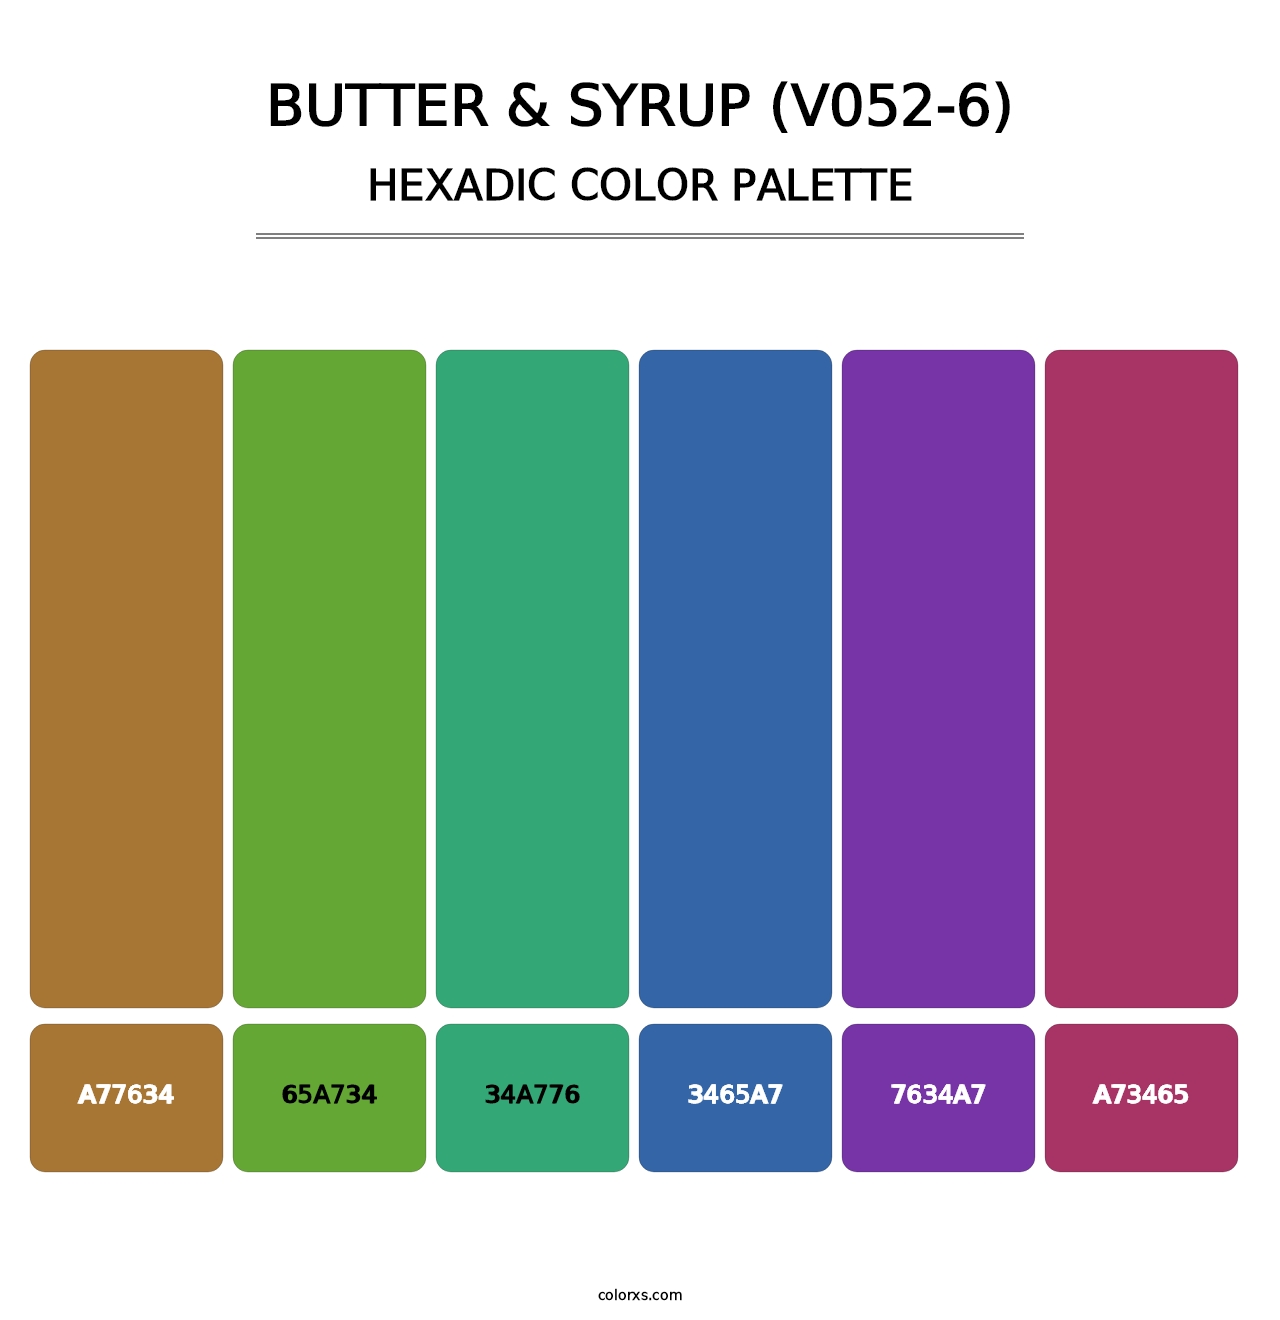 Butter & Syrup (V052-6) - Hexadic Color Palette